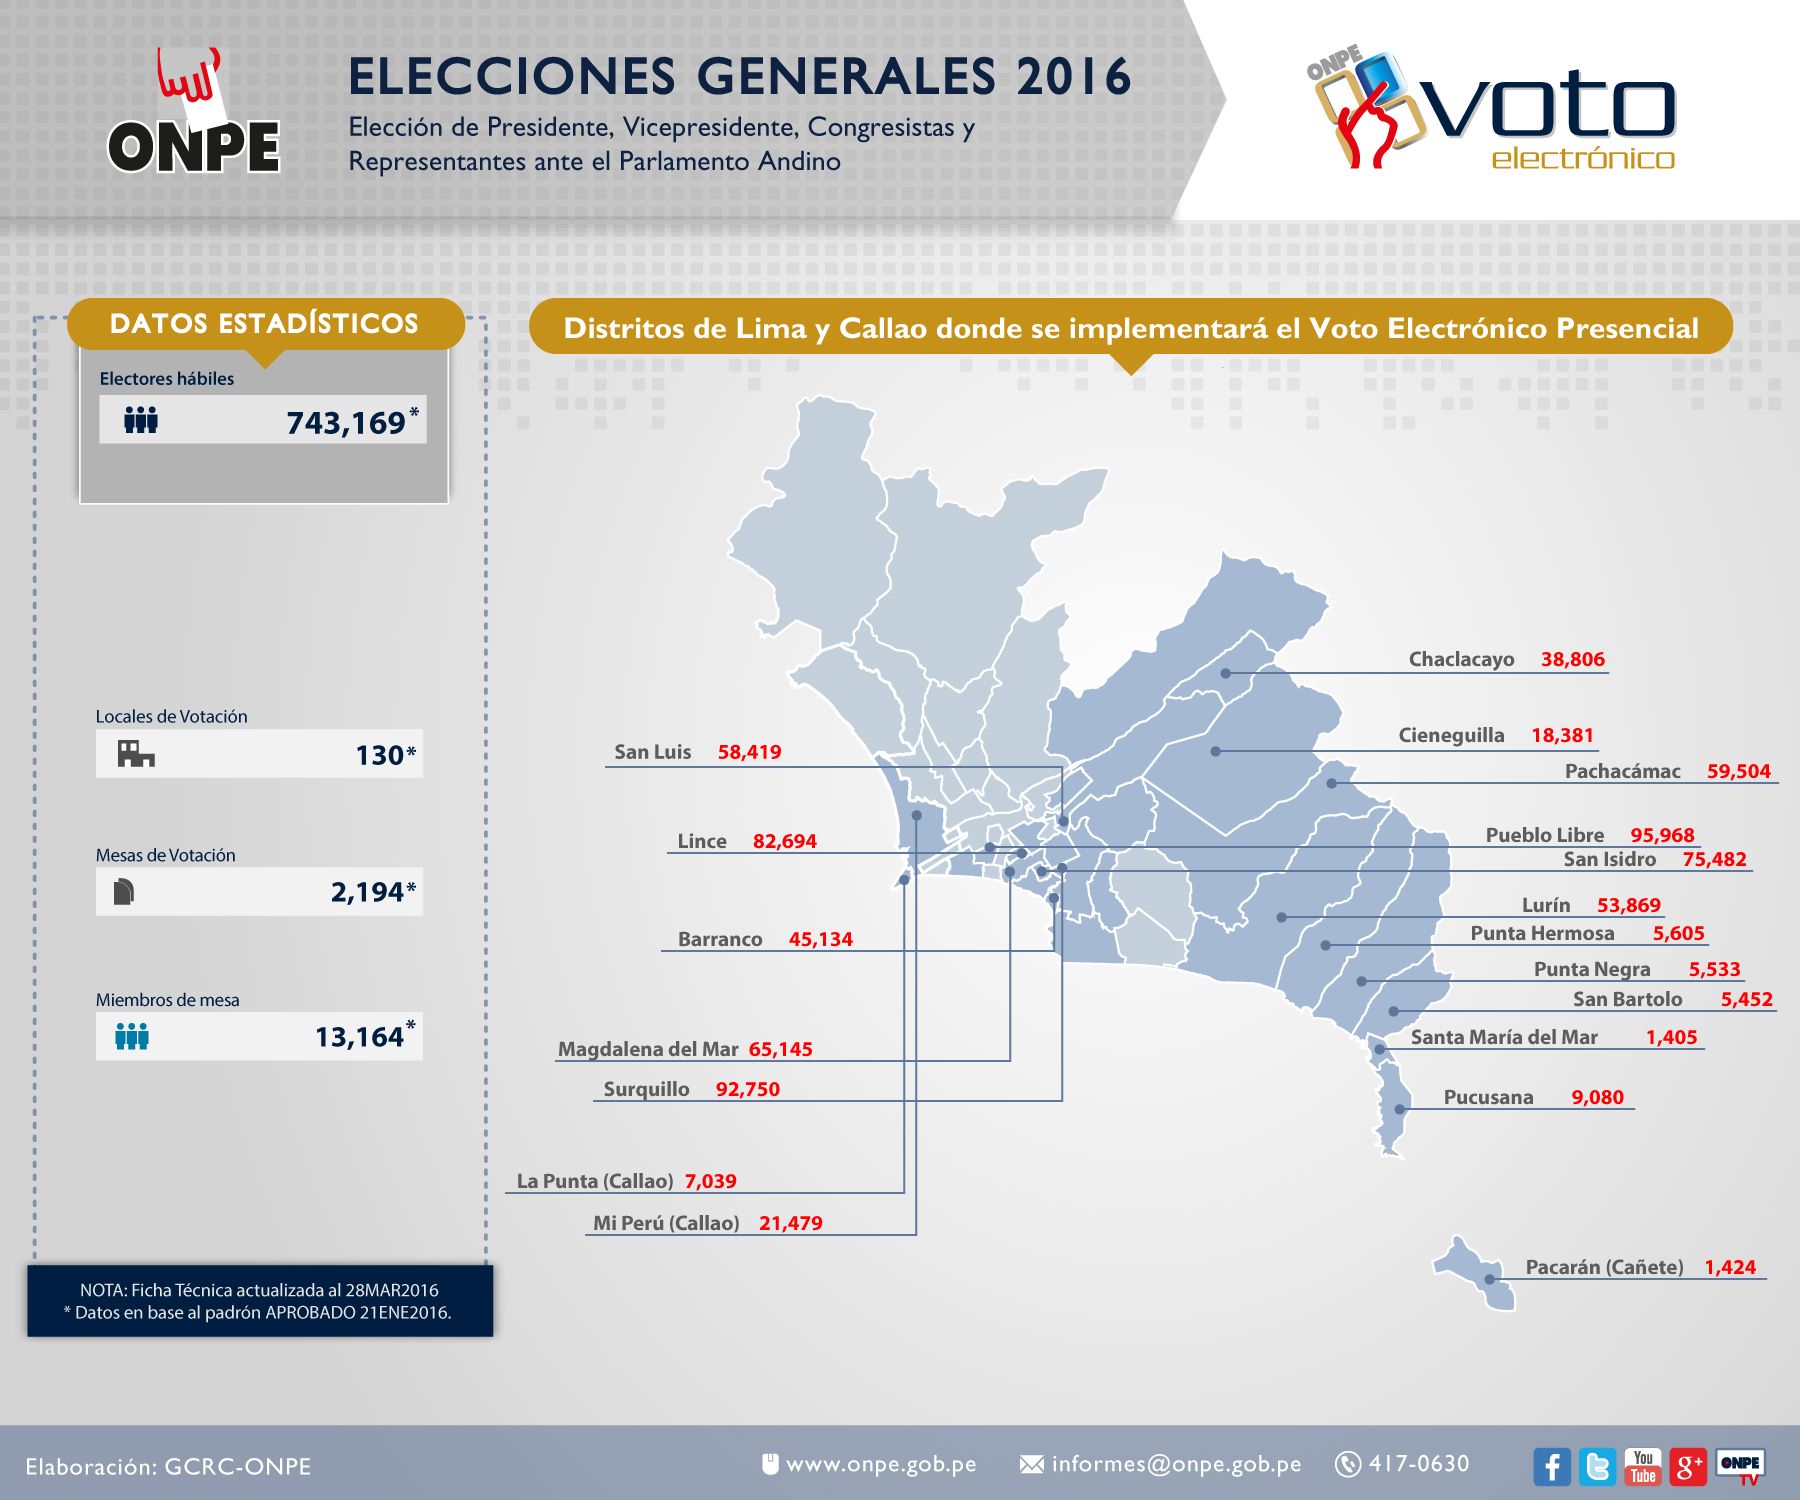 [Foto] ONPE no aplicará voto electrónico en 30 distritos: será en 19